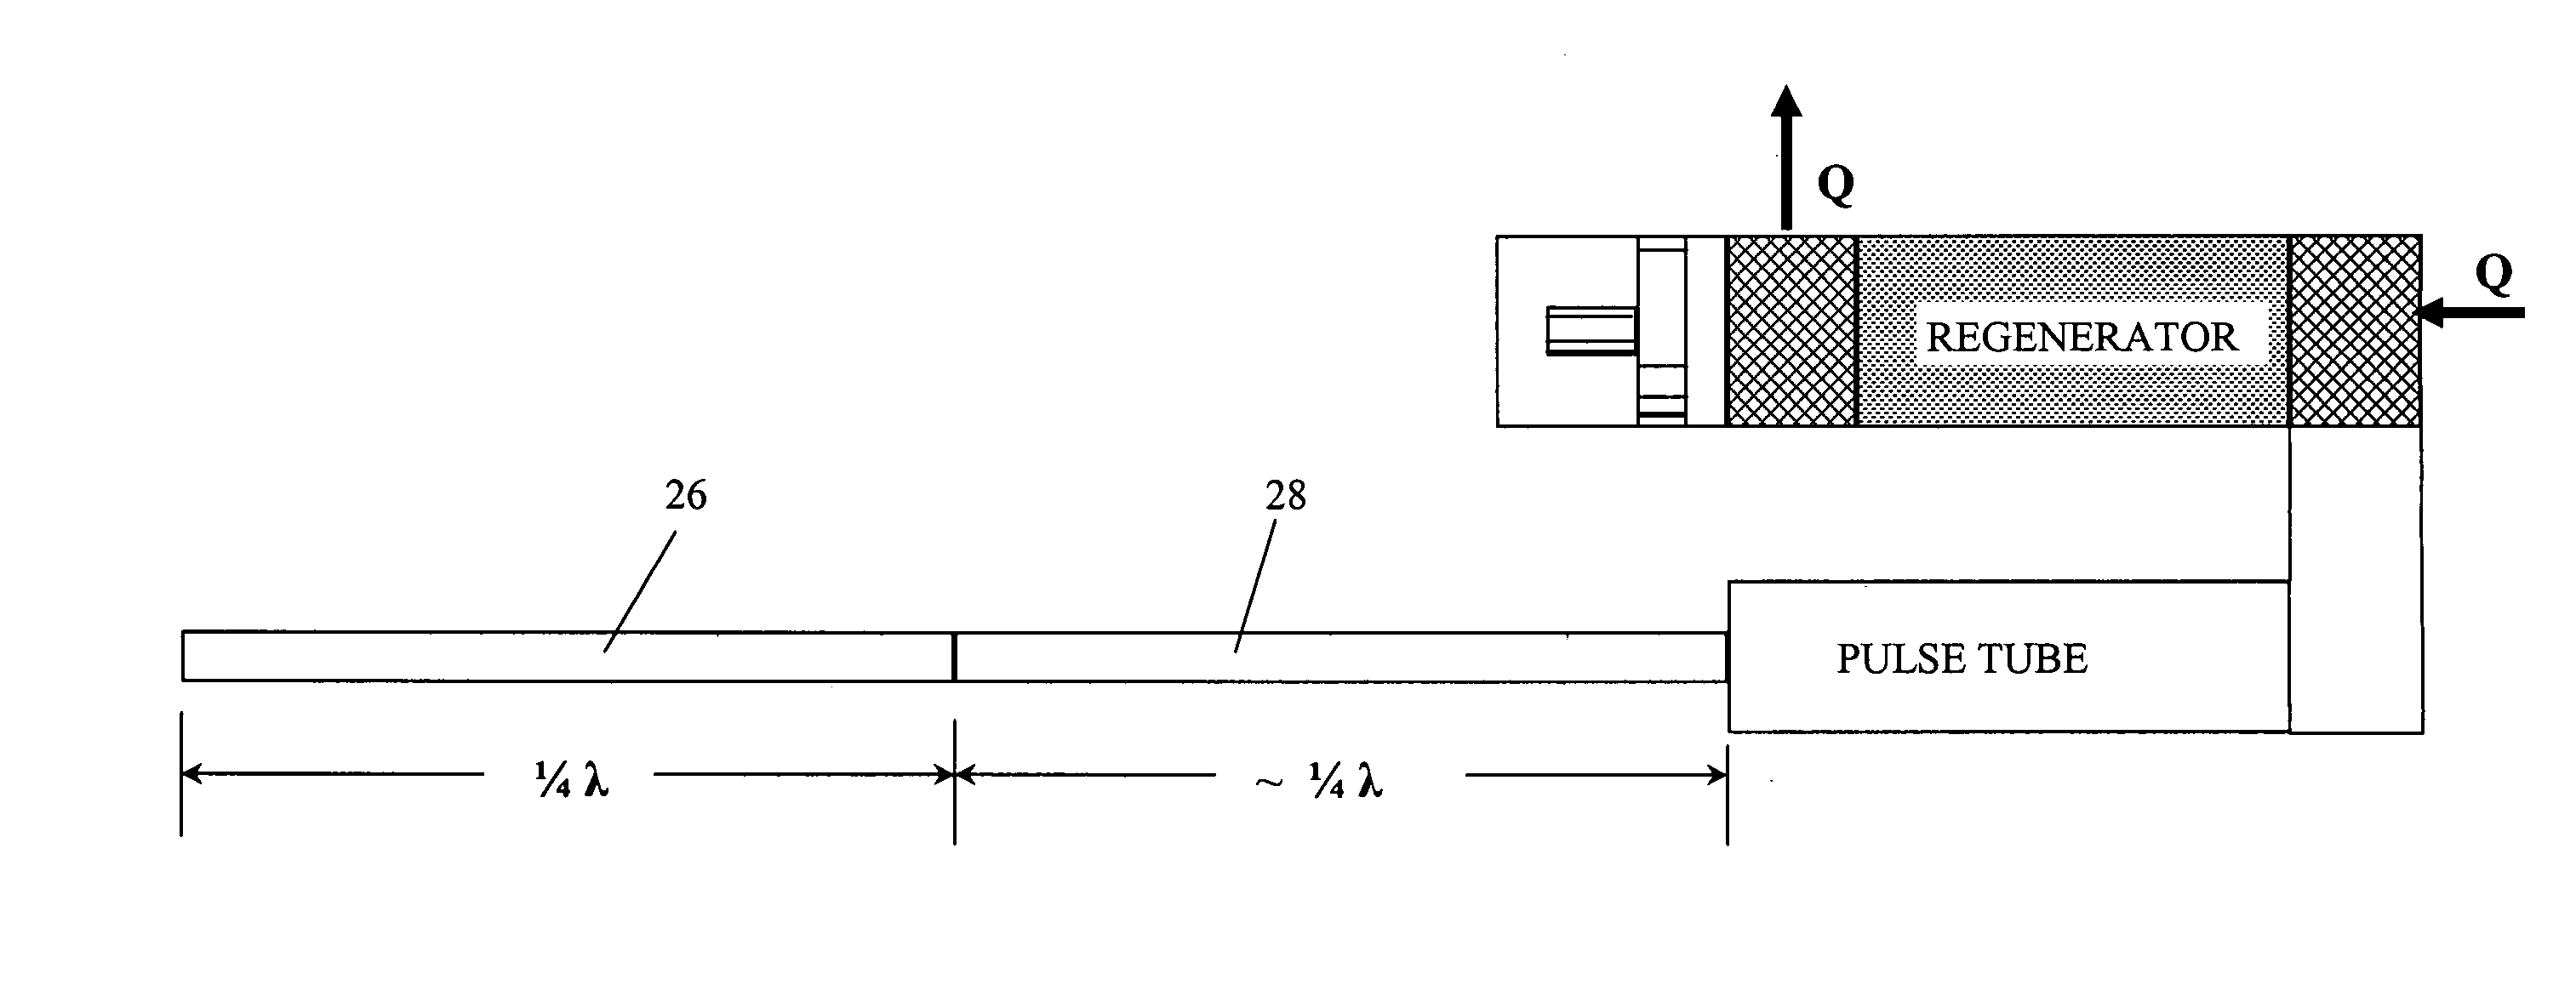 Pulse tube cooler having 1/4 wavelength resonator tube instead of reservoir